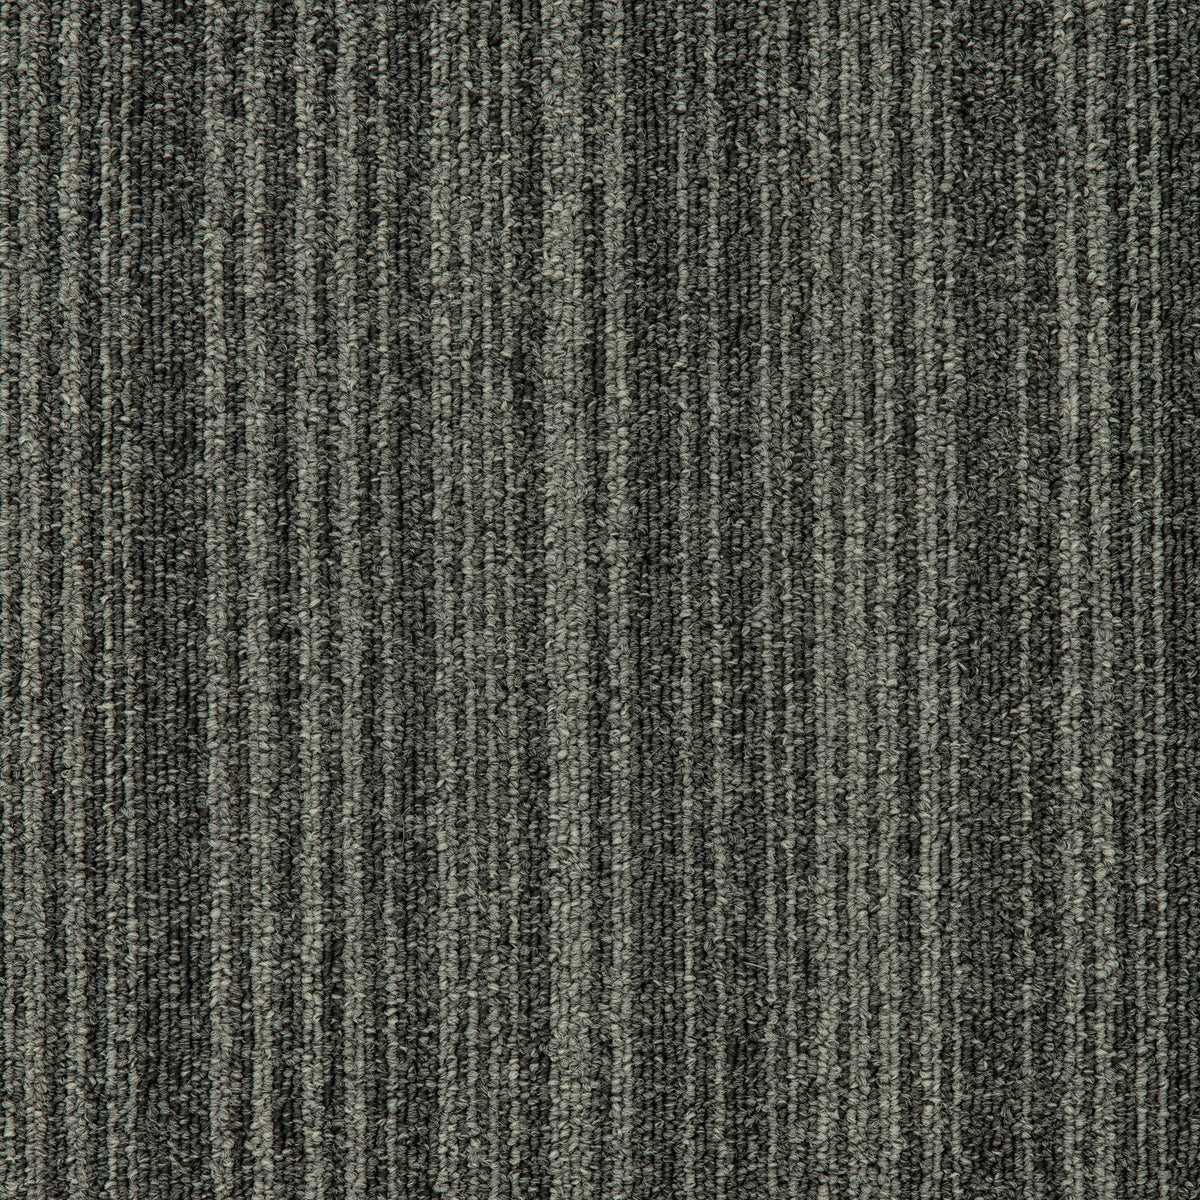 Mohawk Group - Art Intervention Draft Point Carpet Tile - Pewter 959